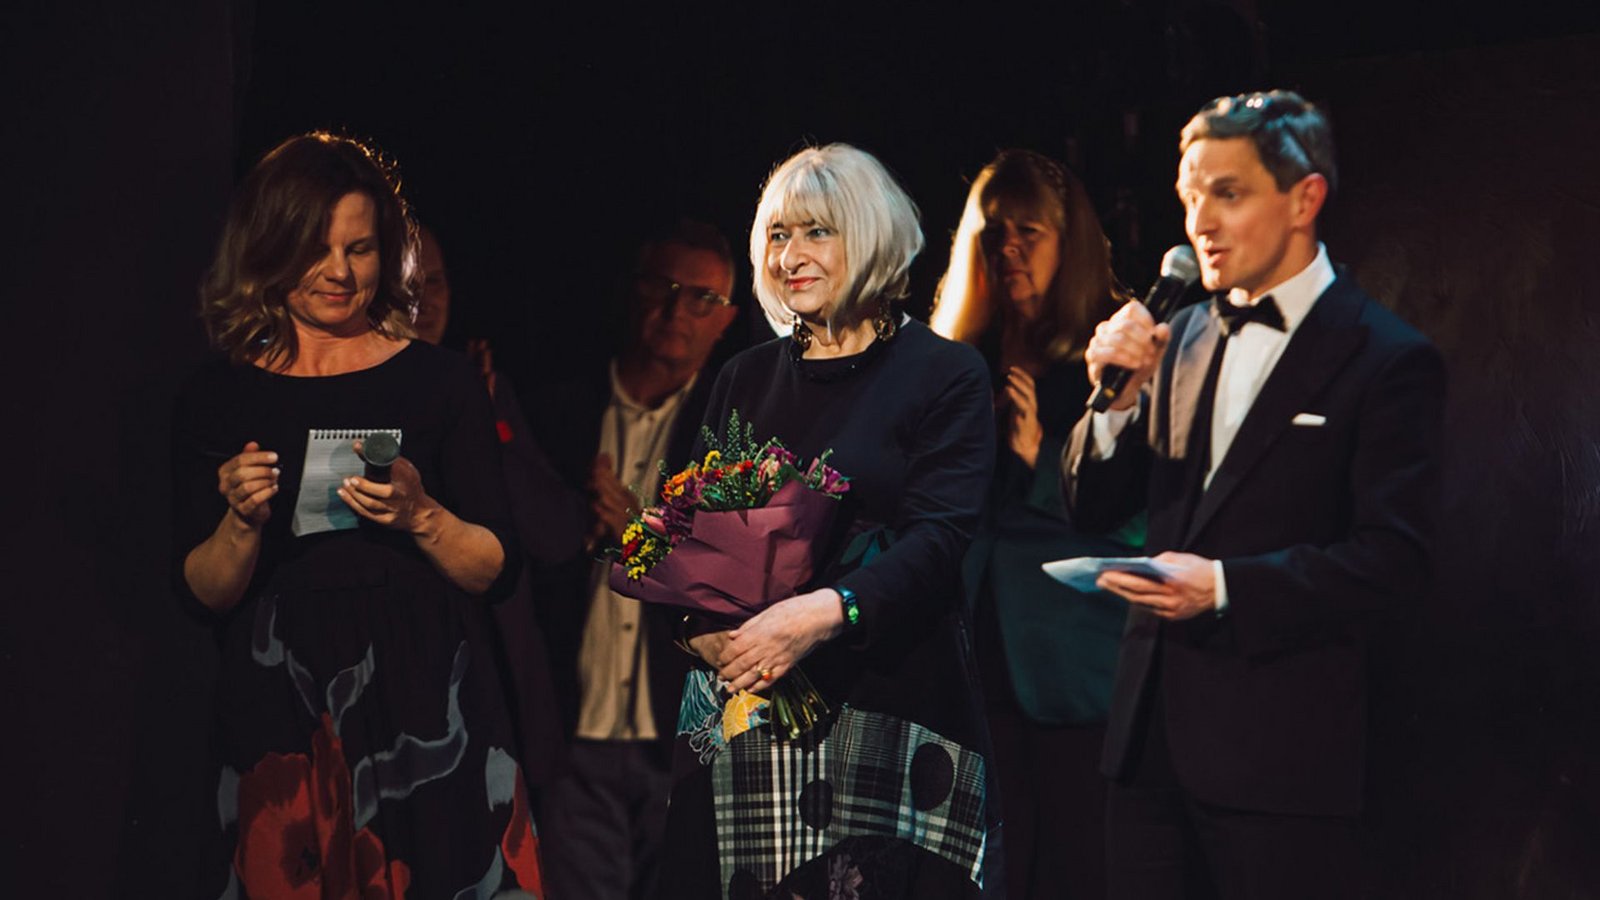 Die Holocaust-Überlebende Elzbieta Ficowska (Mitte) hält Blumen nach einer Vorstellung des Musicals "Irena".Foto: Karpati & Zarewicz/dpa